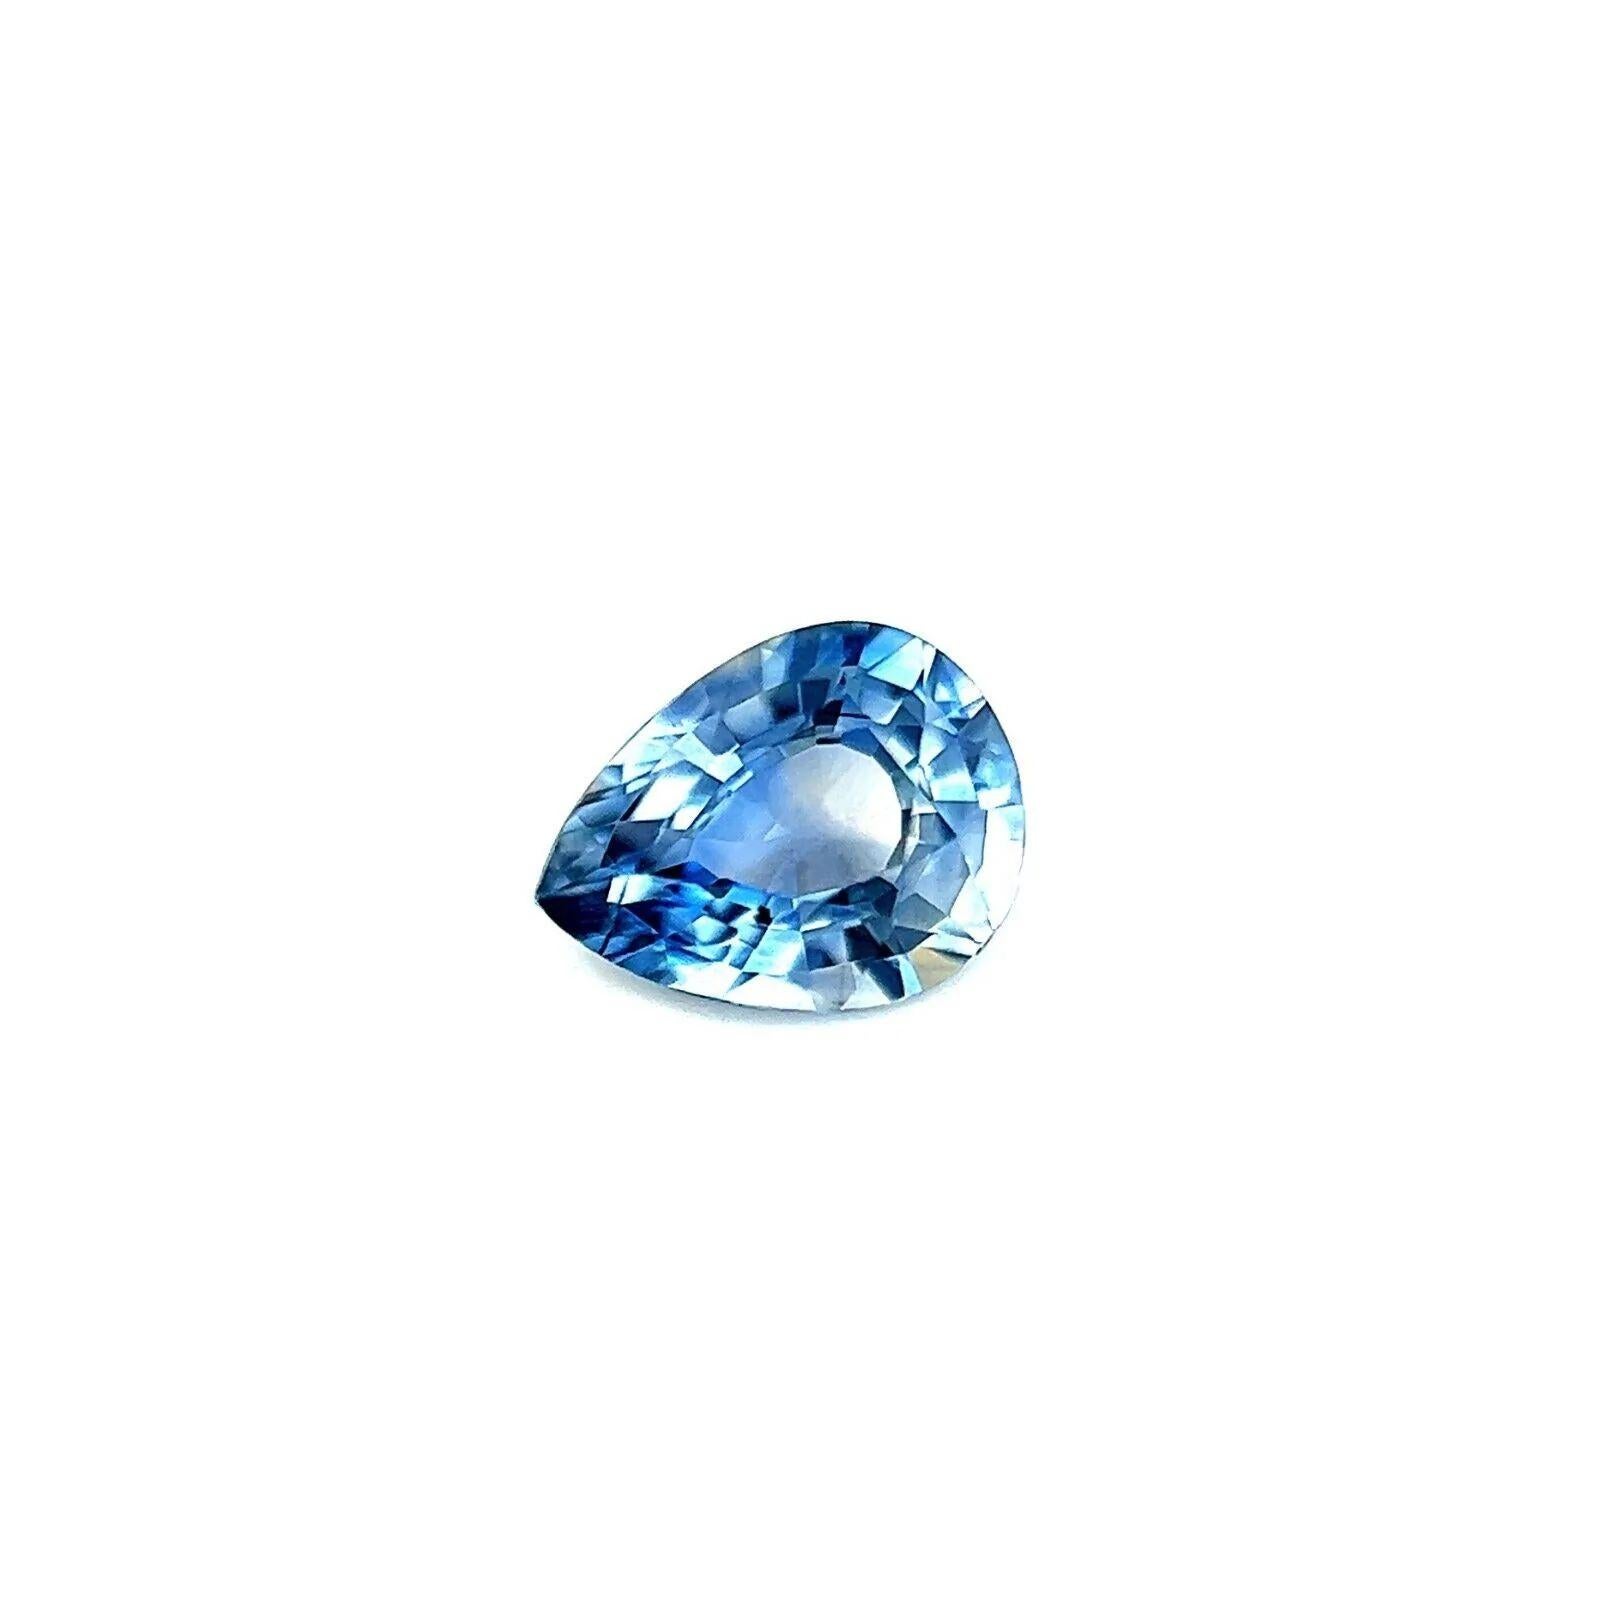 Saphir non traité bleu verdâtre 0,72 carat taille poire 6 x 4,8 mm Vvs Gem

Saphir vert bleu clair naturel non traité.
0,72 carat, d'une belle couleur bleu-vert, avec une excellente taille en poire et un polissage idéal pour montrer une grande